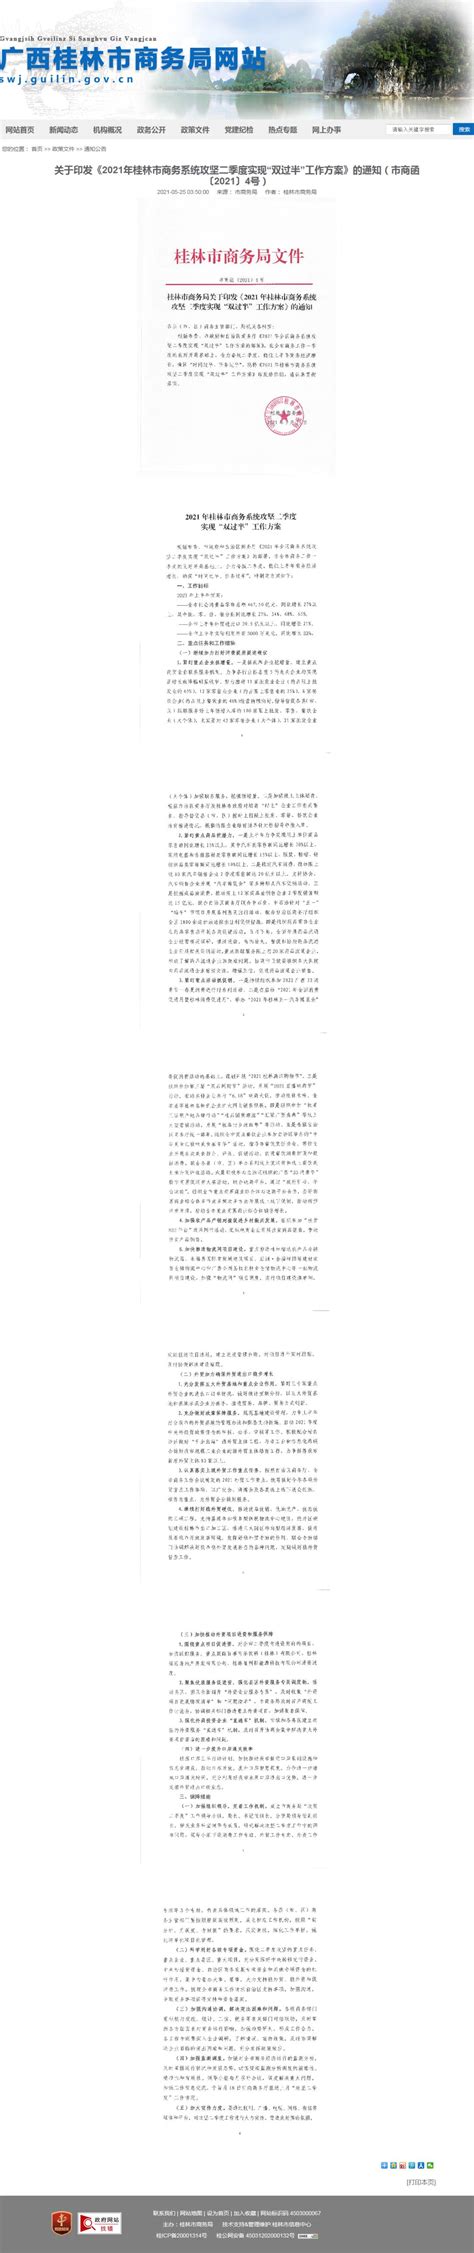 桂林市商务局关于印发《2021年桂林市商务系统攻坚二季度实现“双过半”工作方案》的通知-桂林市政府公开信息查询服务平台